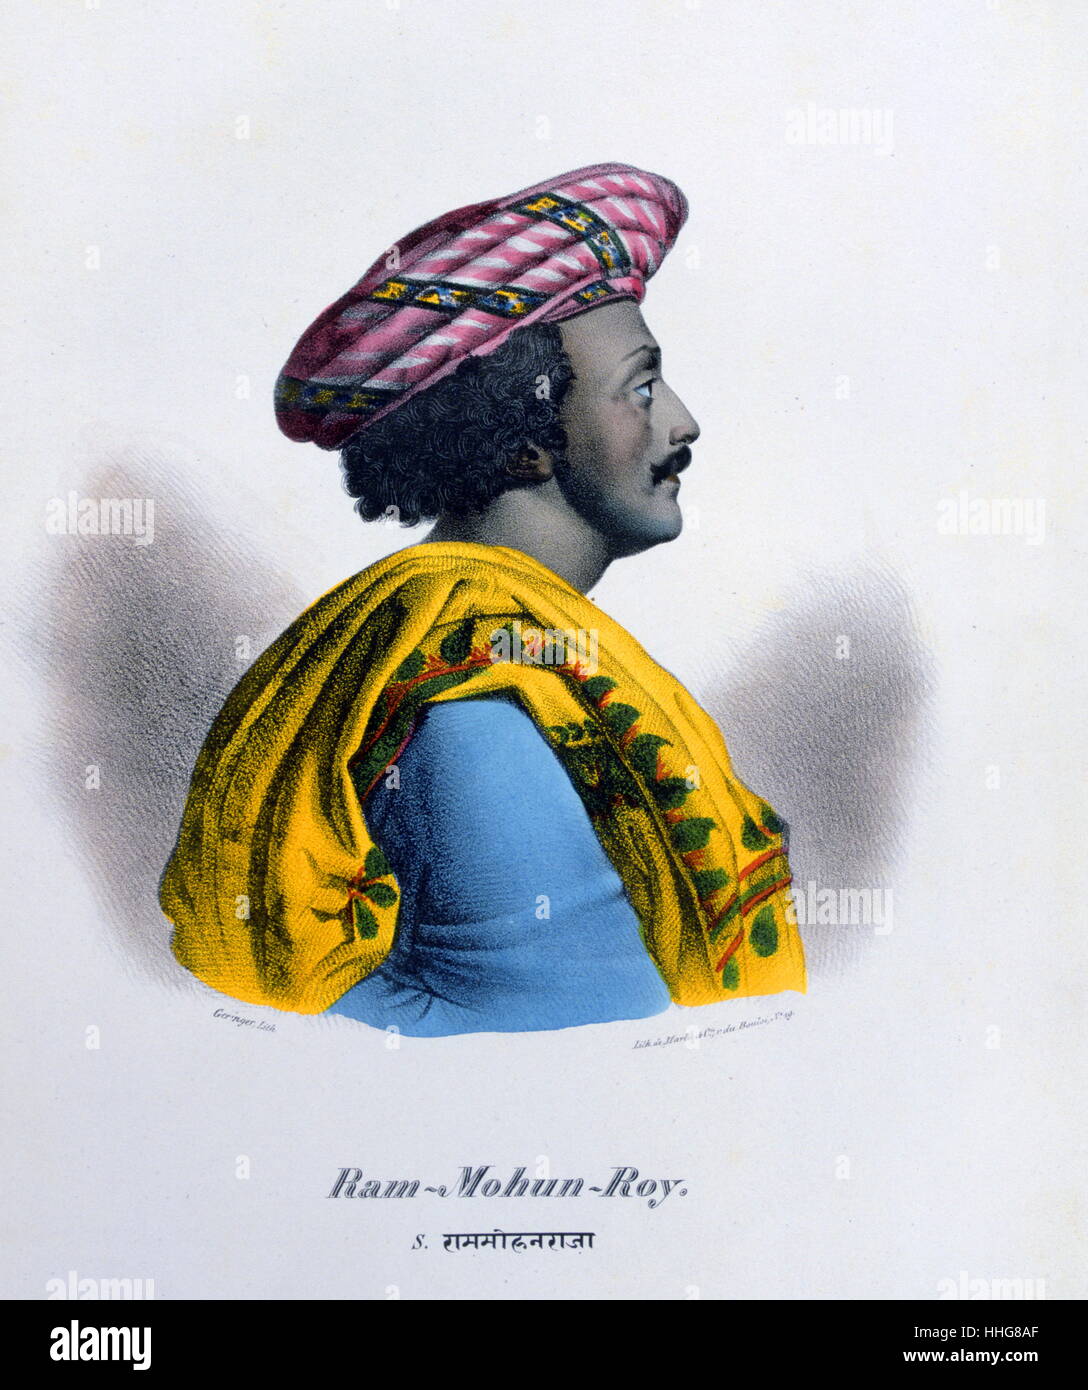 Raja Ram Mohan Roy (1772 - 1833) Fondateur du Brahmo Sabha en 1828, mouvement qui engendre le Brahmo Samaj, un mouvement de réforme socio-religieuse. Lithographie de Marlet 1828 Français Banque D'Images